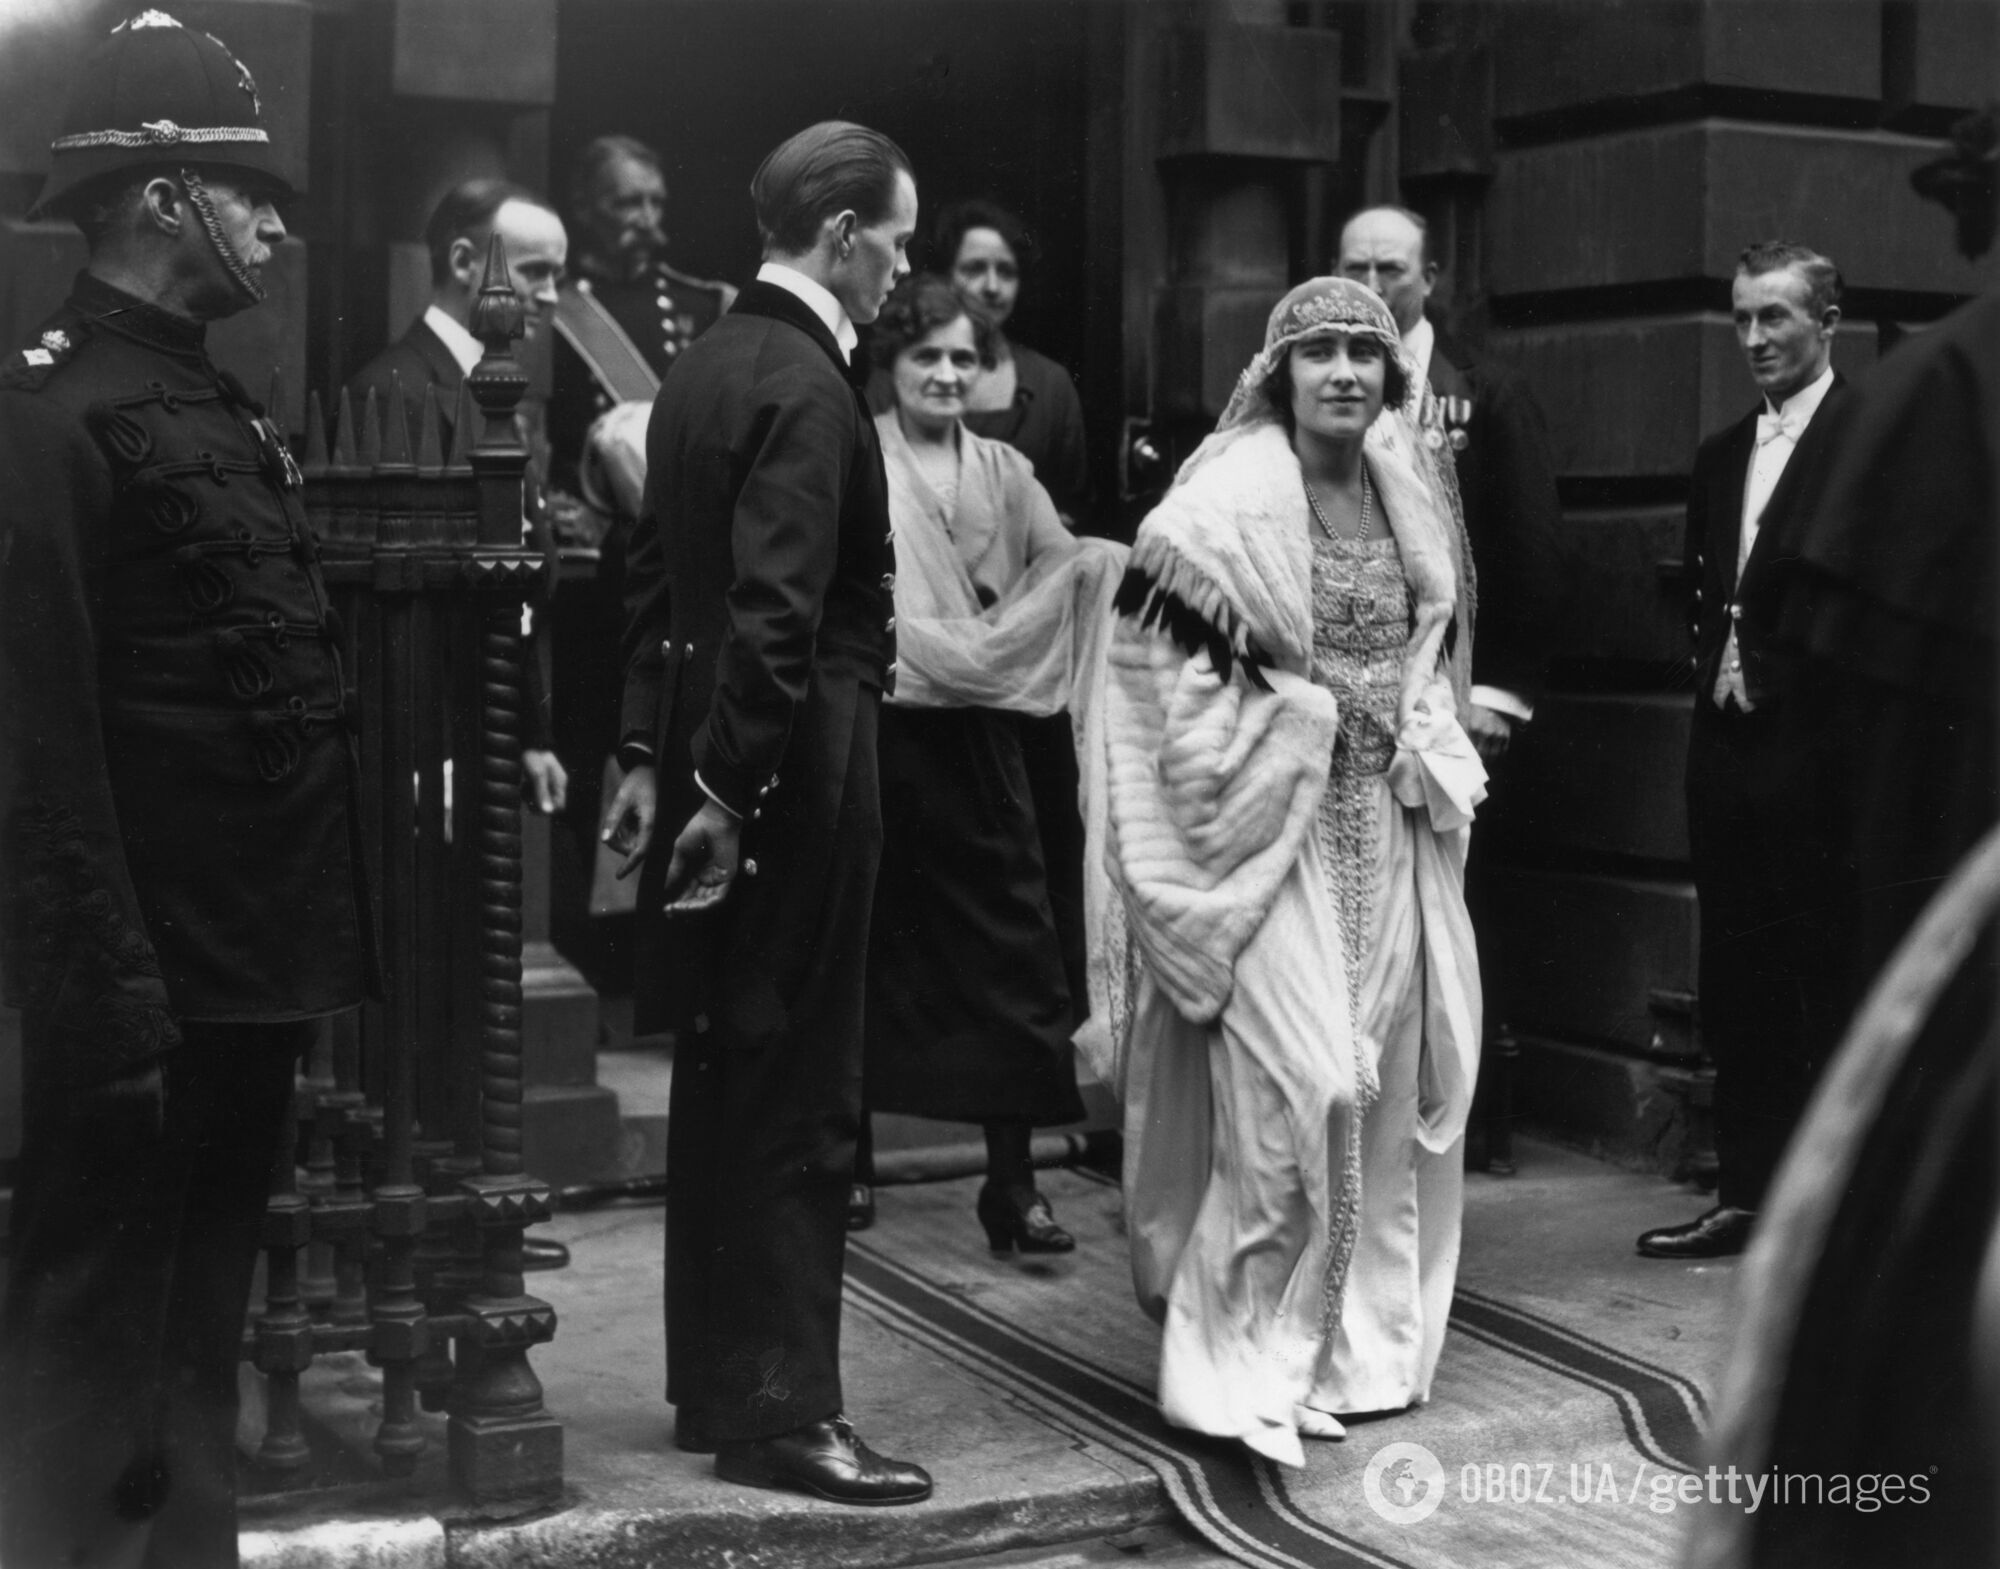 Любимая невестка короля: Кейт Миддлтон надела бриллиантовую тиару, которую не видели 100 лет